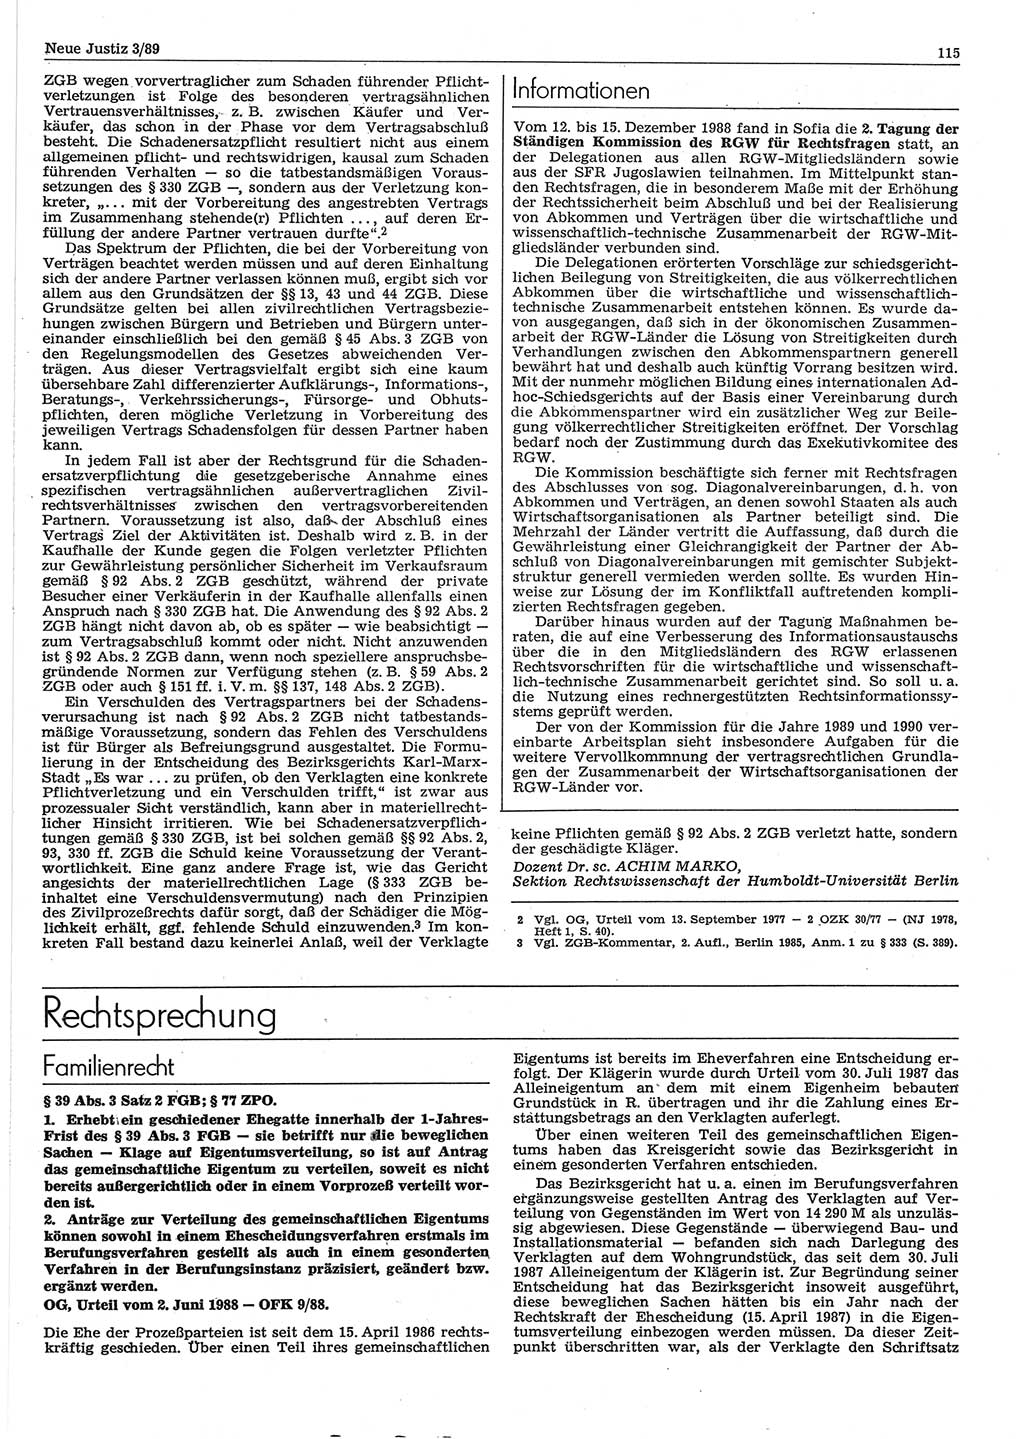 Neue Justiz (NJ), Zeitschrift für sozialistisches Recht und Gesetzlichkeit [Deutsche Demokratische Republik (DDR)], 43. Jahrgang 1989, Seite 115 (NJ DDR 1989, S. 115)